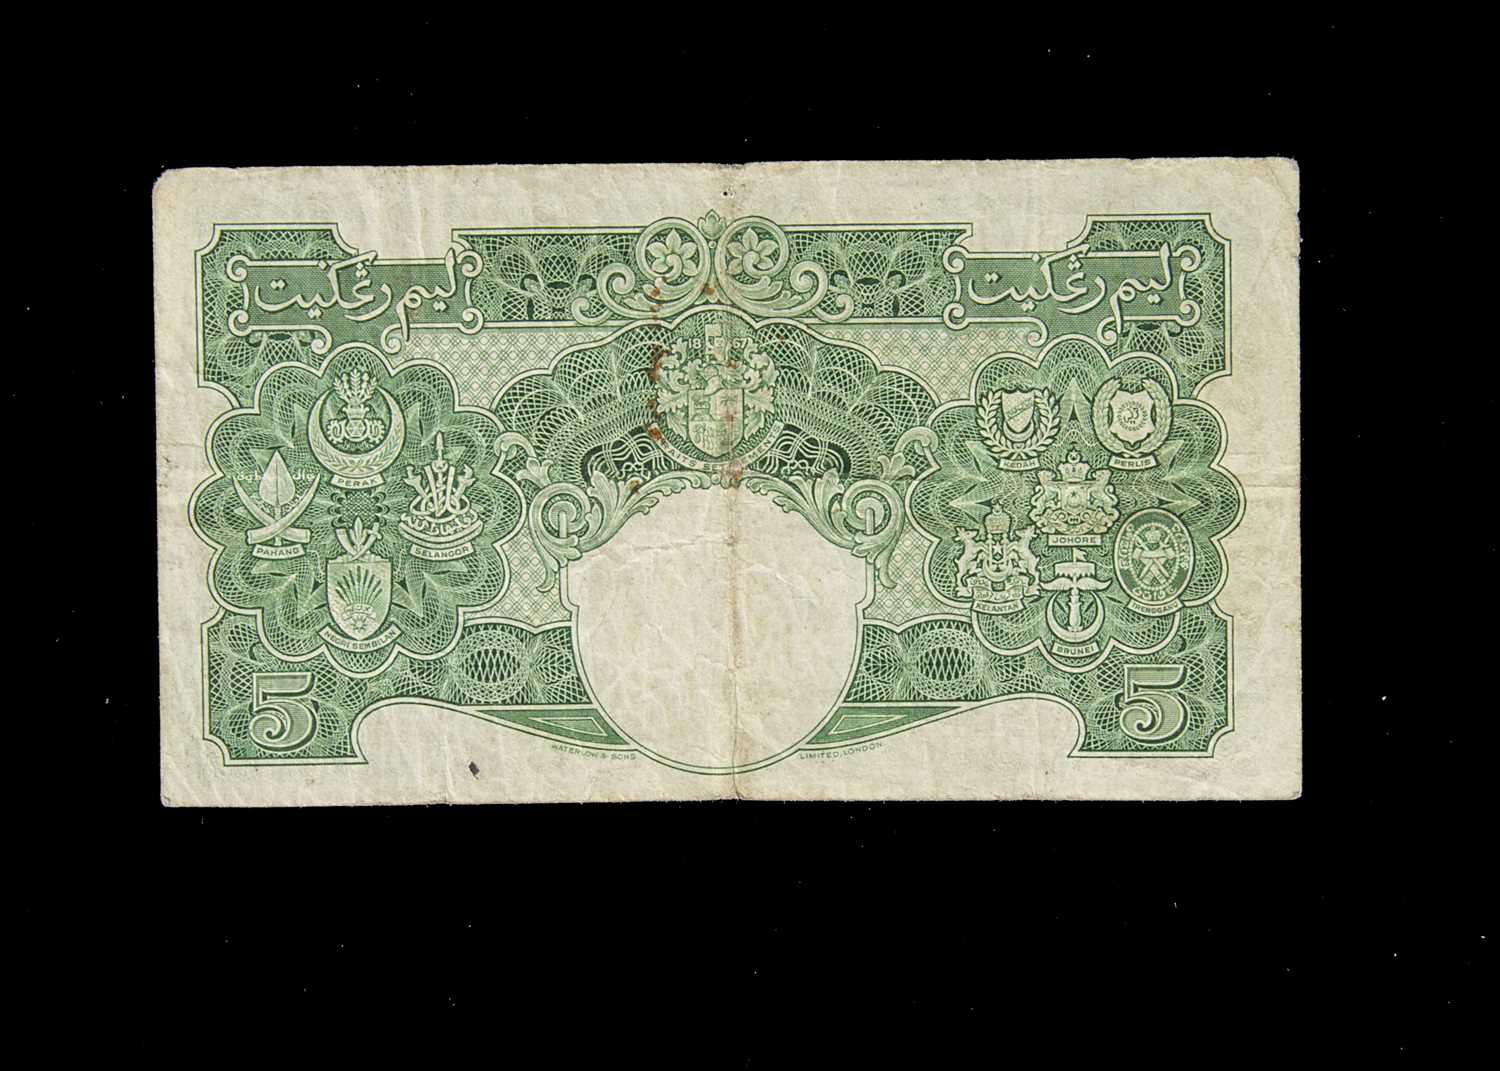 Malaya 5 Dollars banknote, - Image 2 of 2